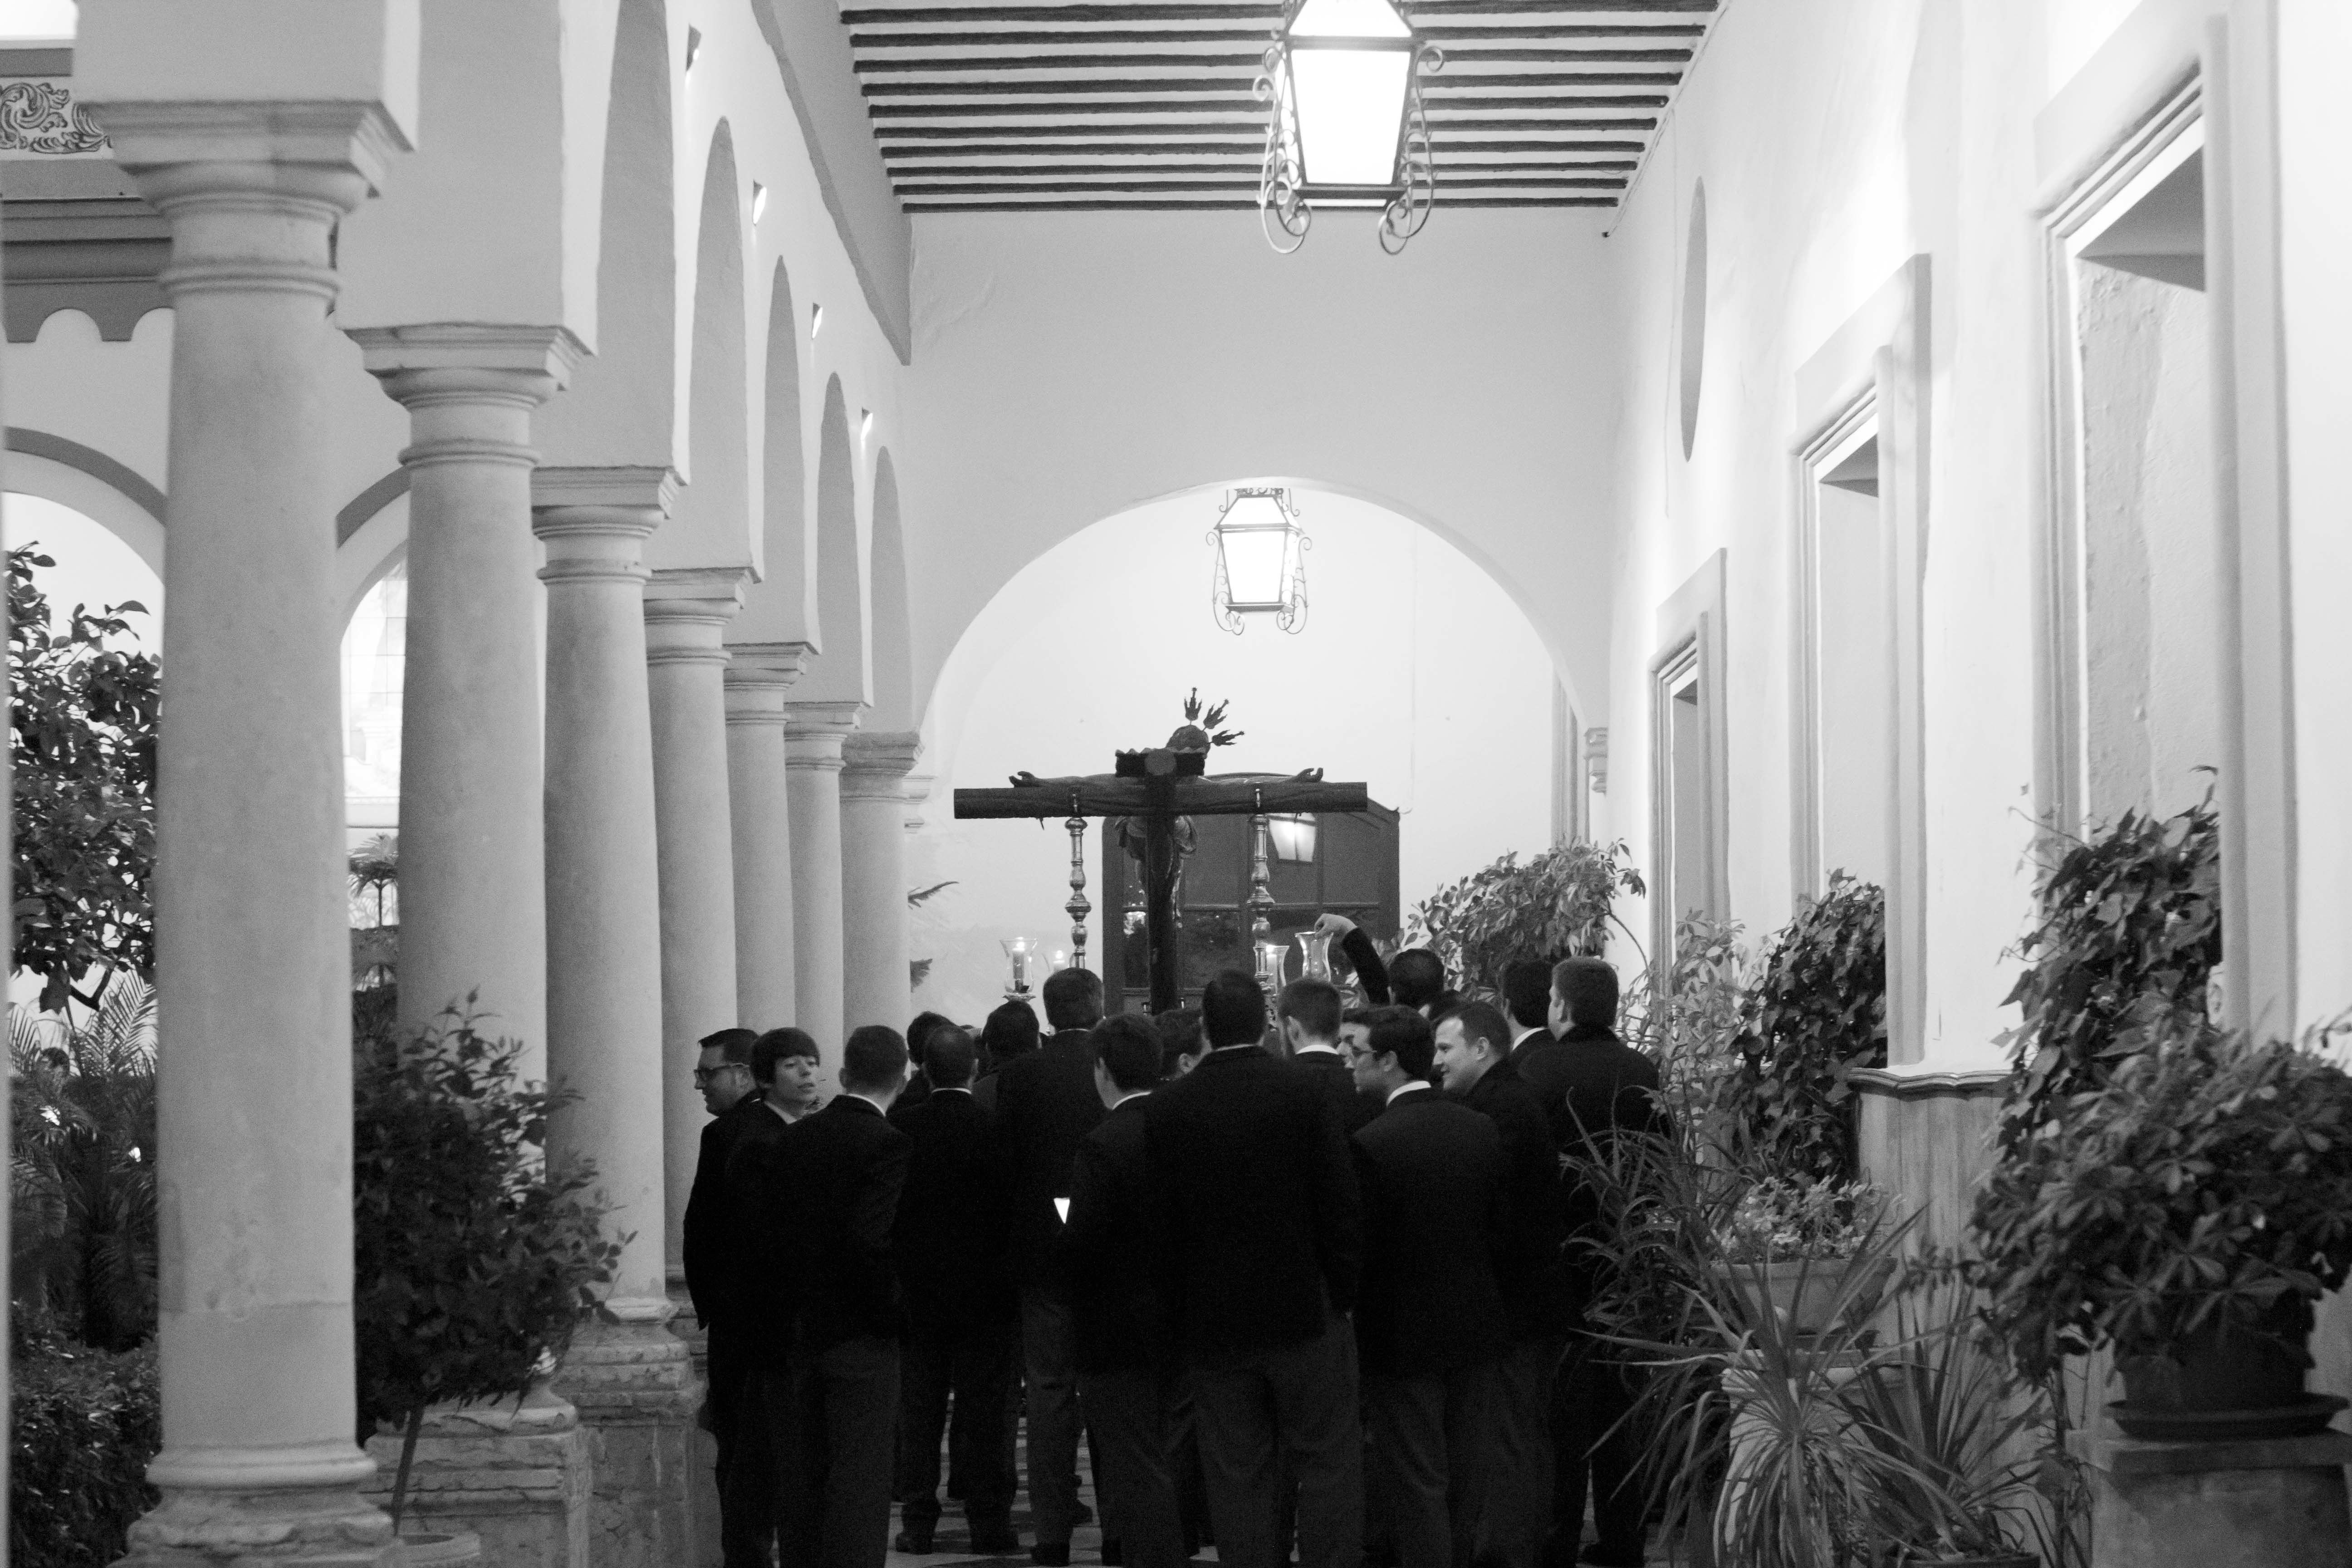 Galería: Un Vía Crucis de Pasión en el claustro del convento franciscano. Imágenes de Jesús Ruiz "Gitanito"